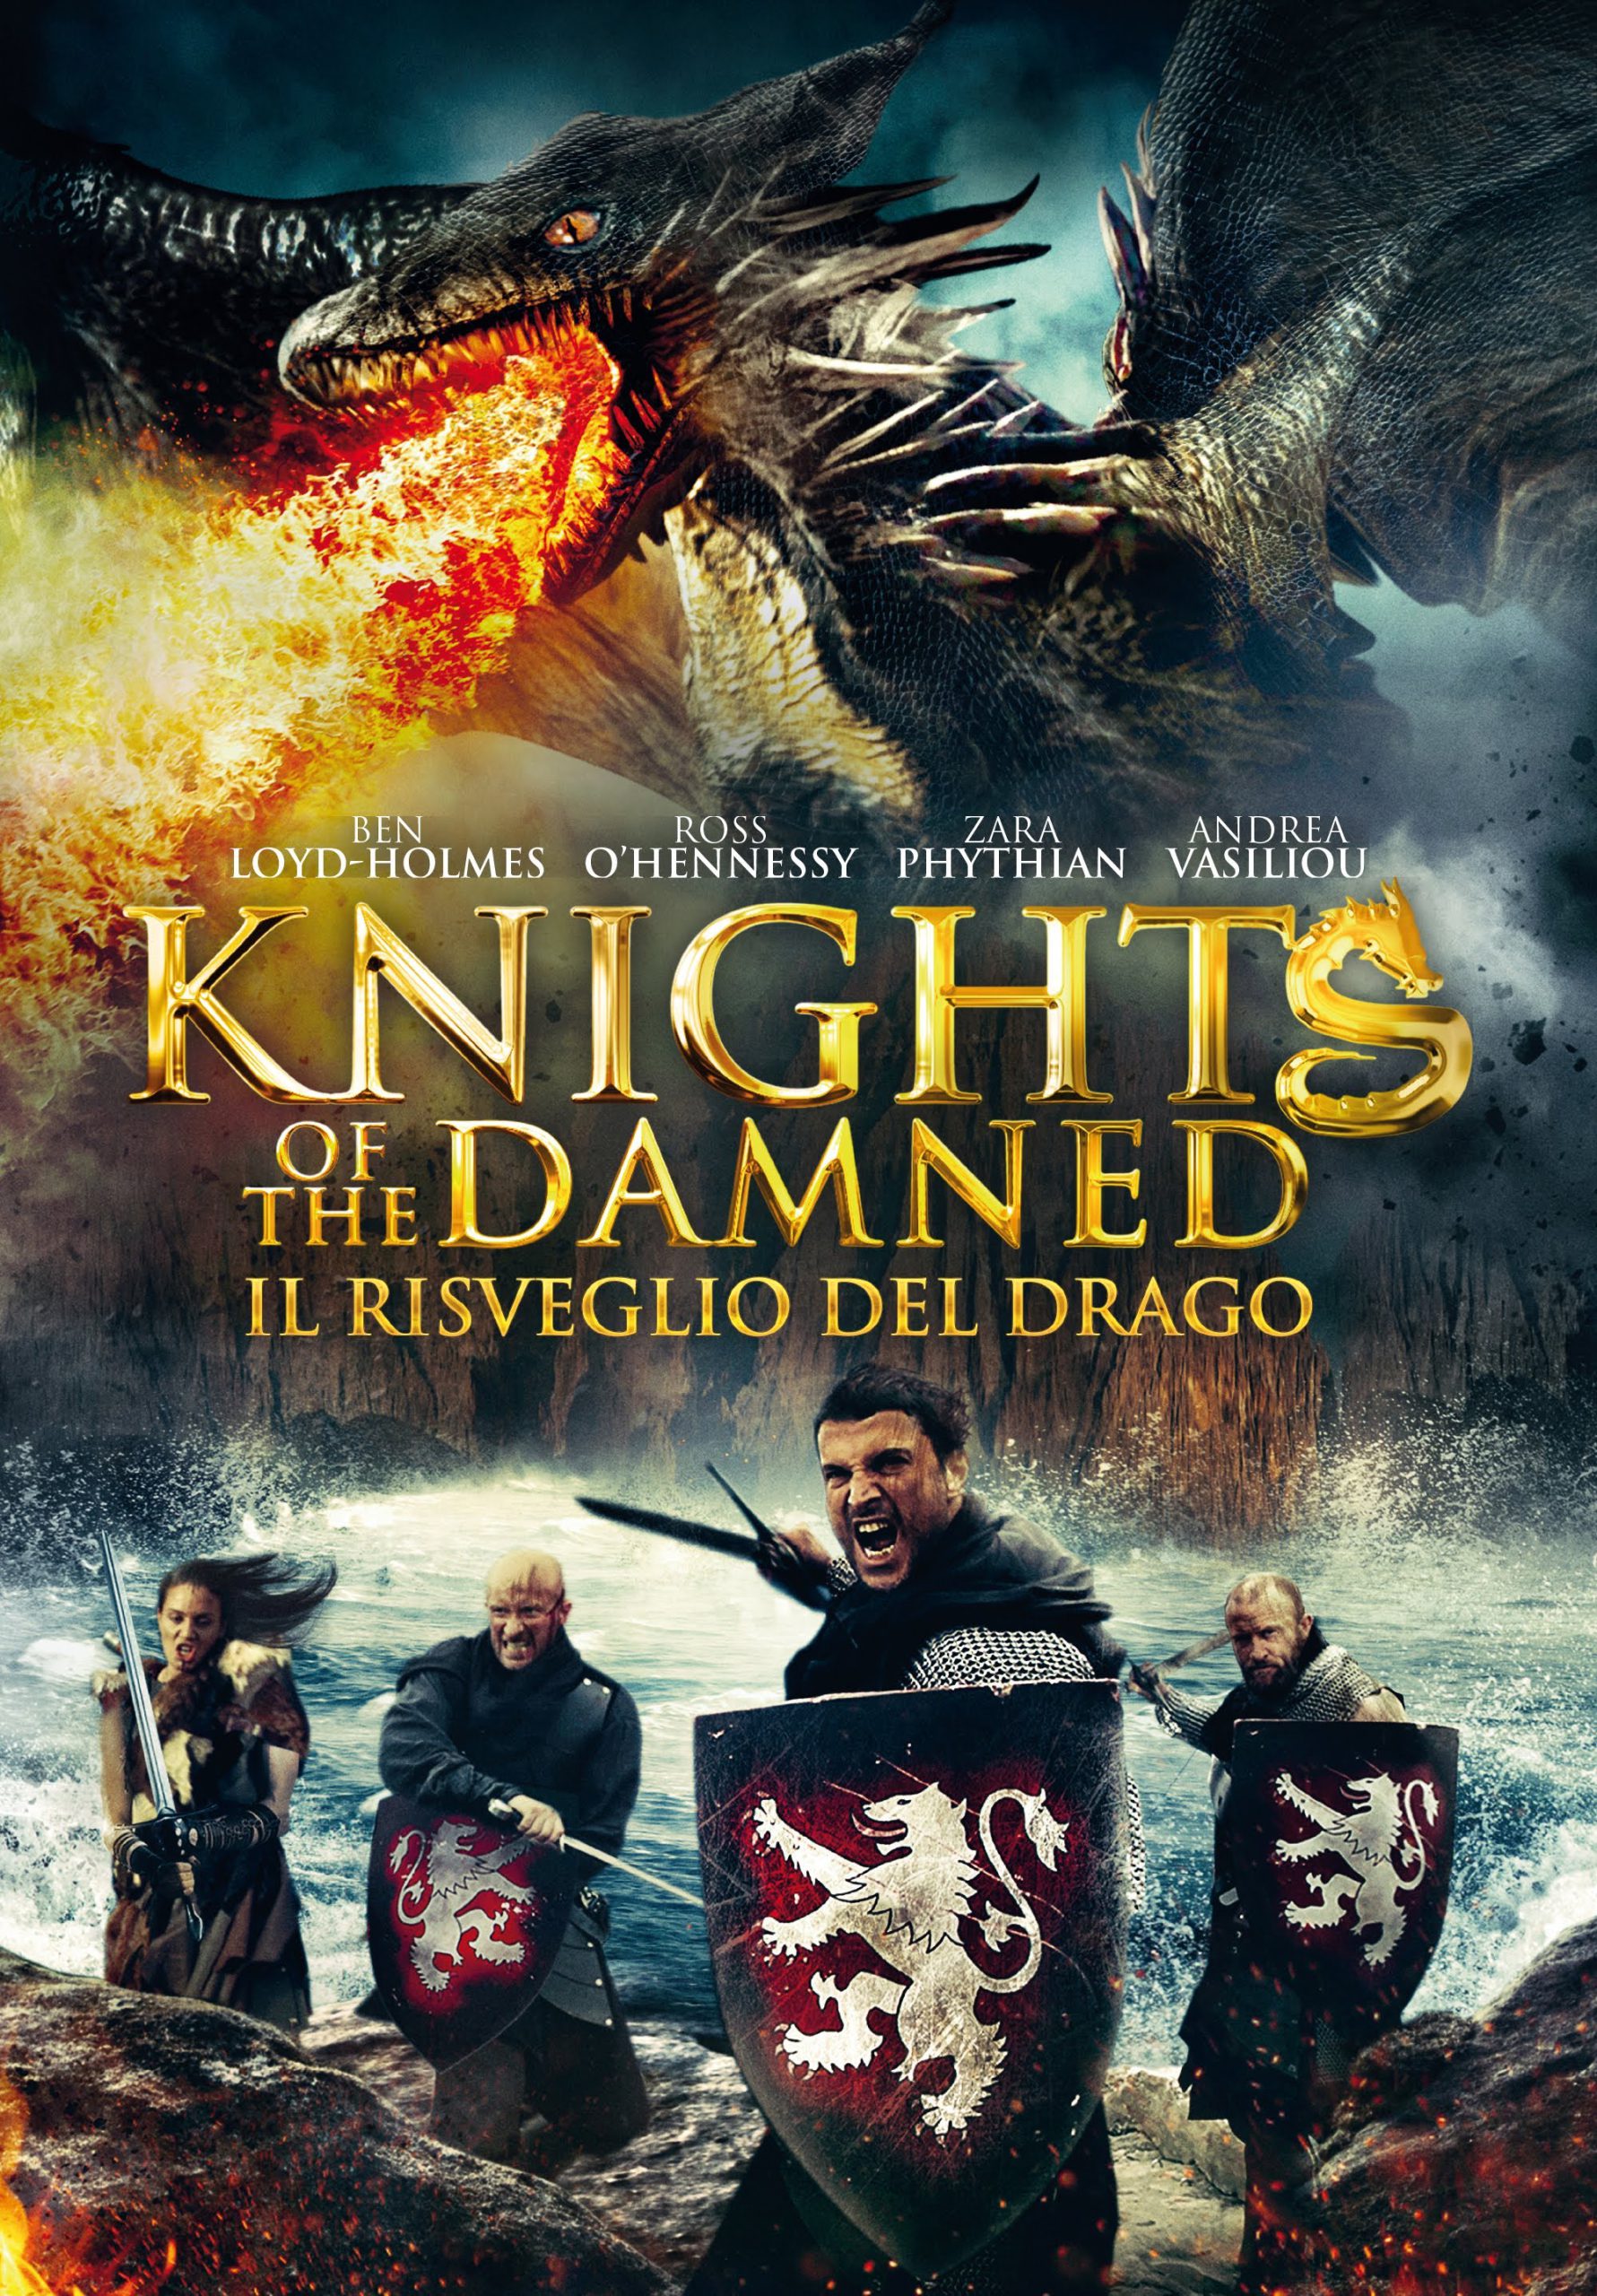 Knights of the Damned – Il risveglio del drago [HD] (2017)